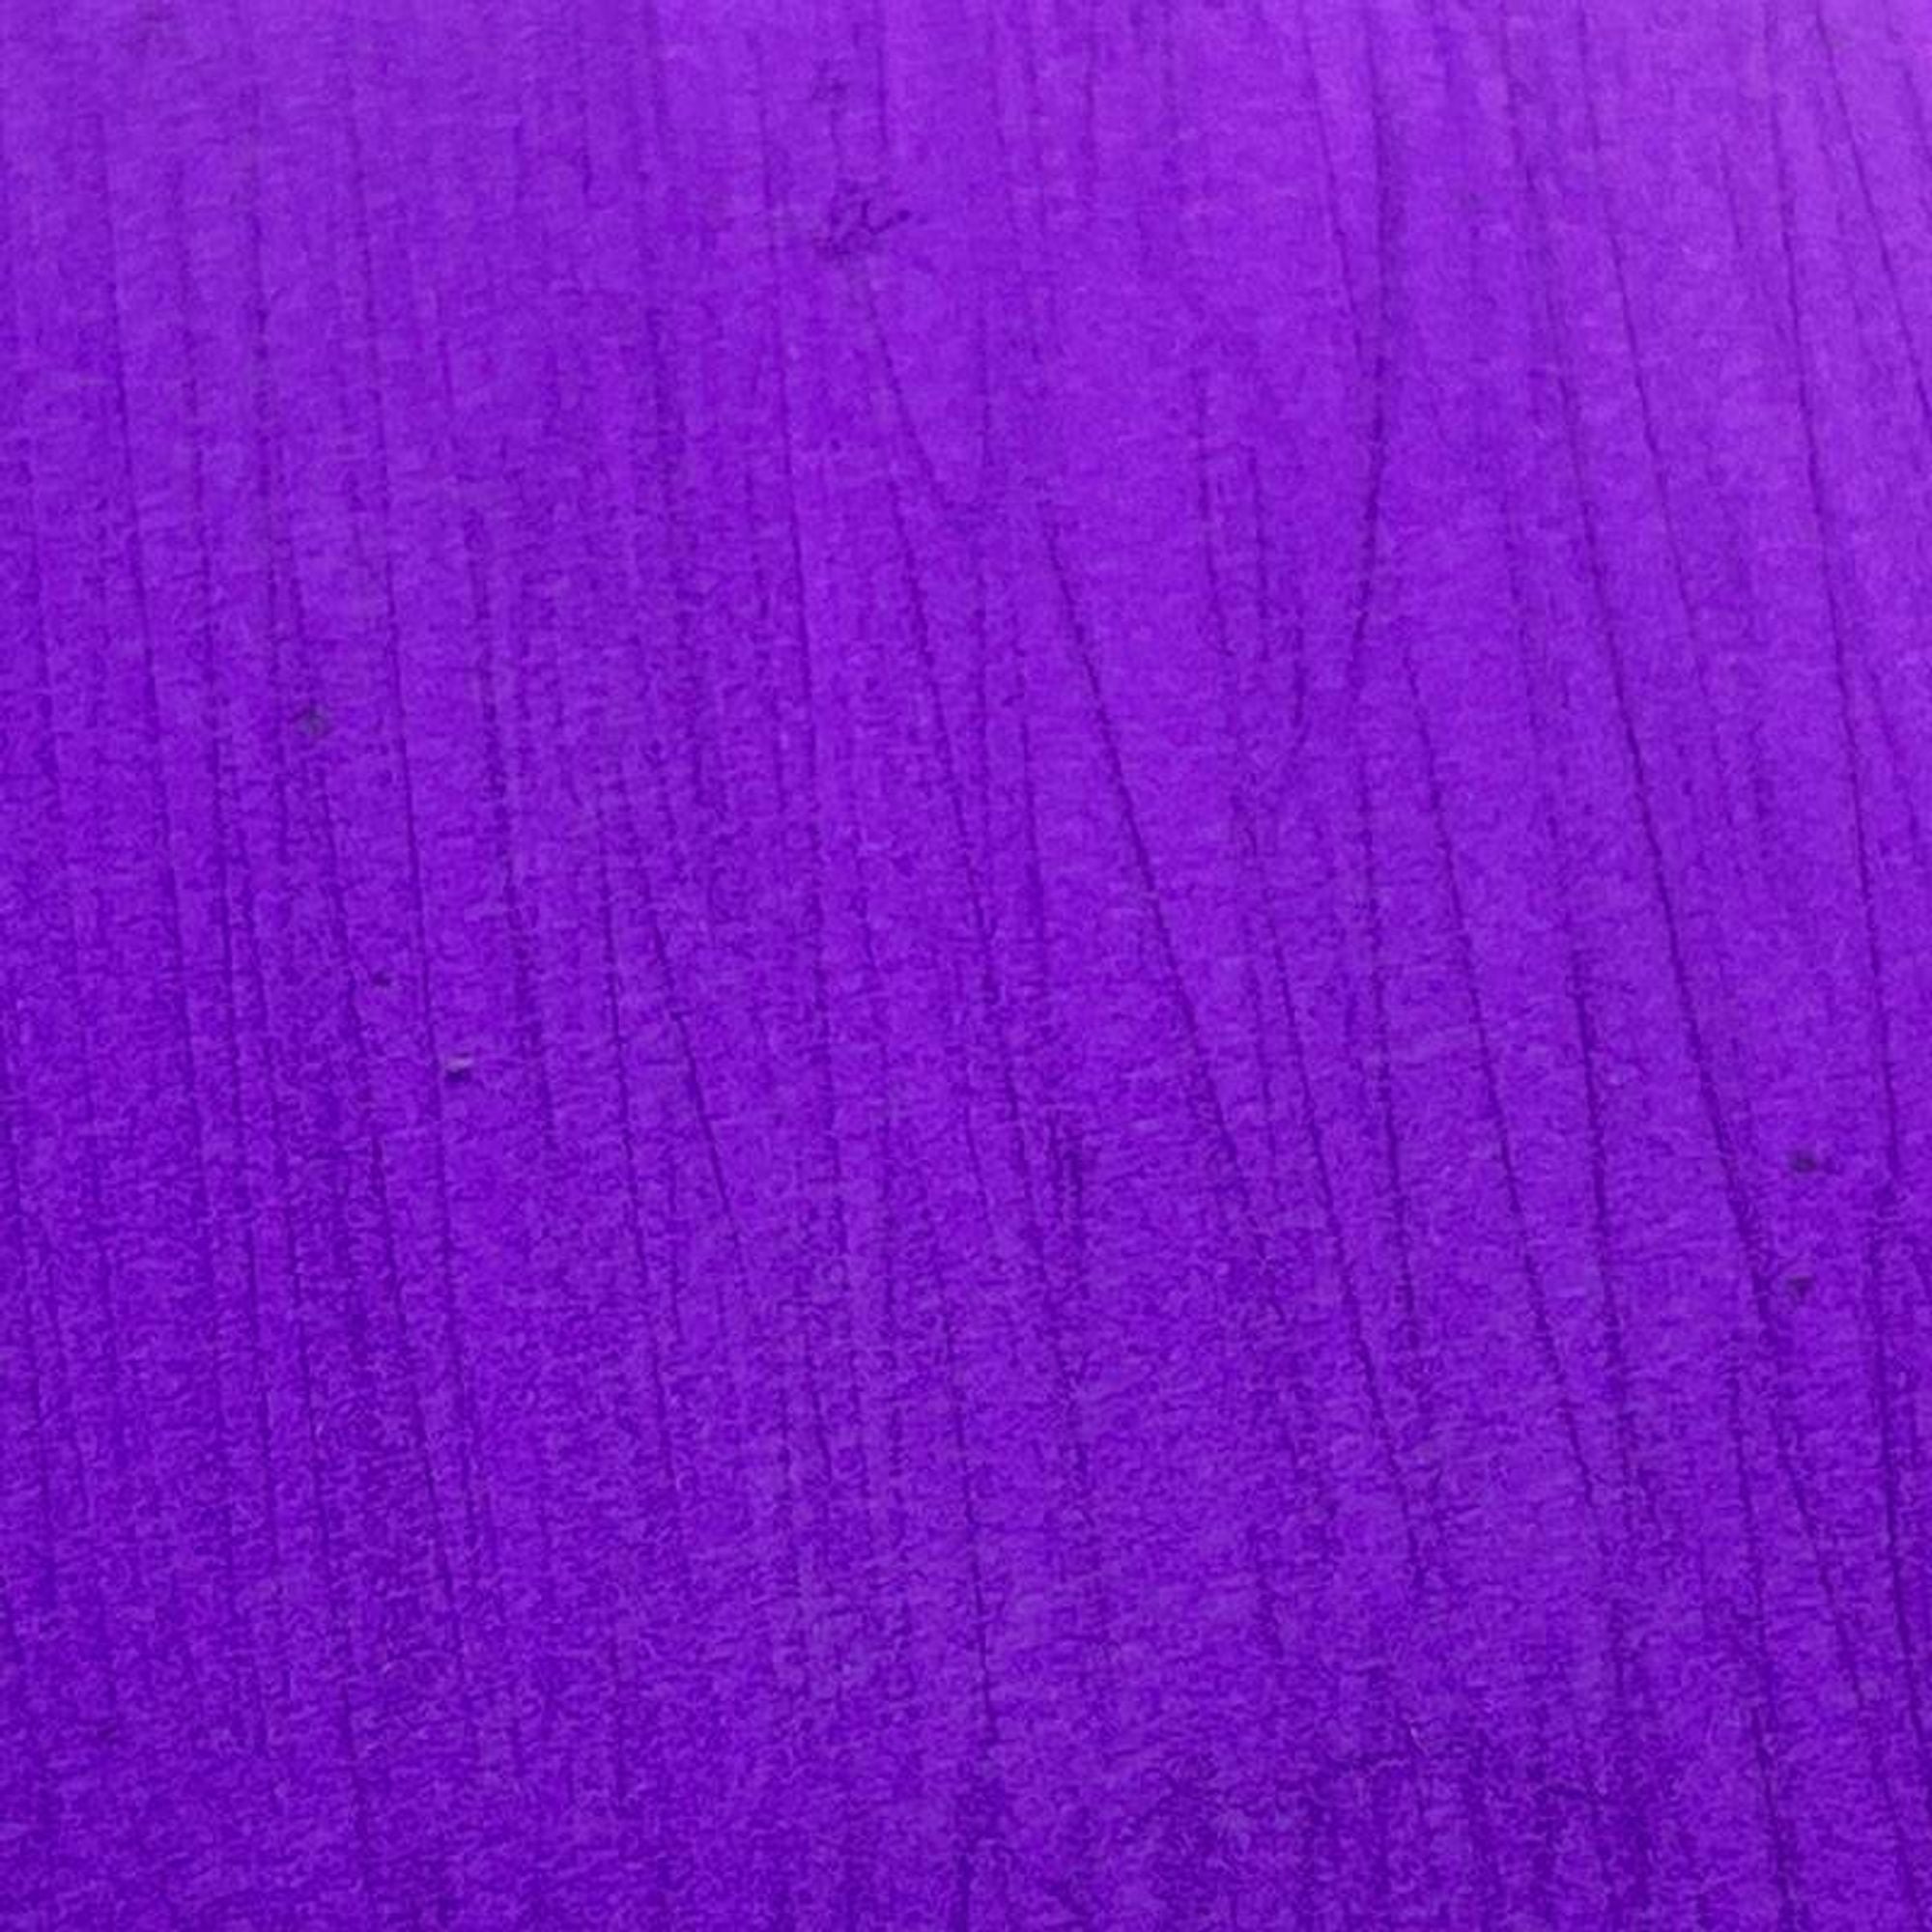 #colour_purple tease